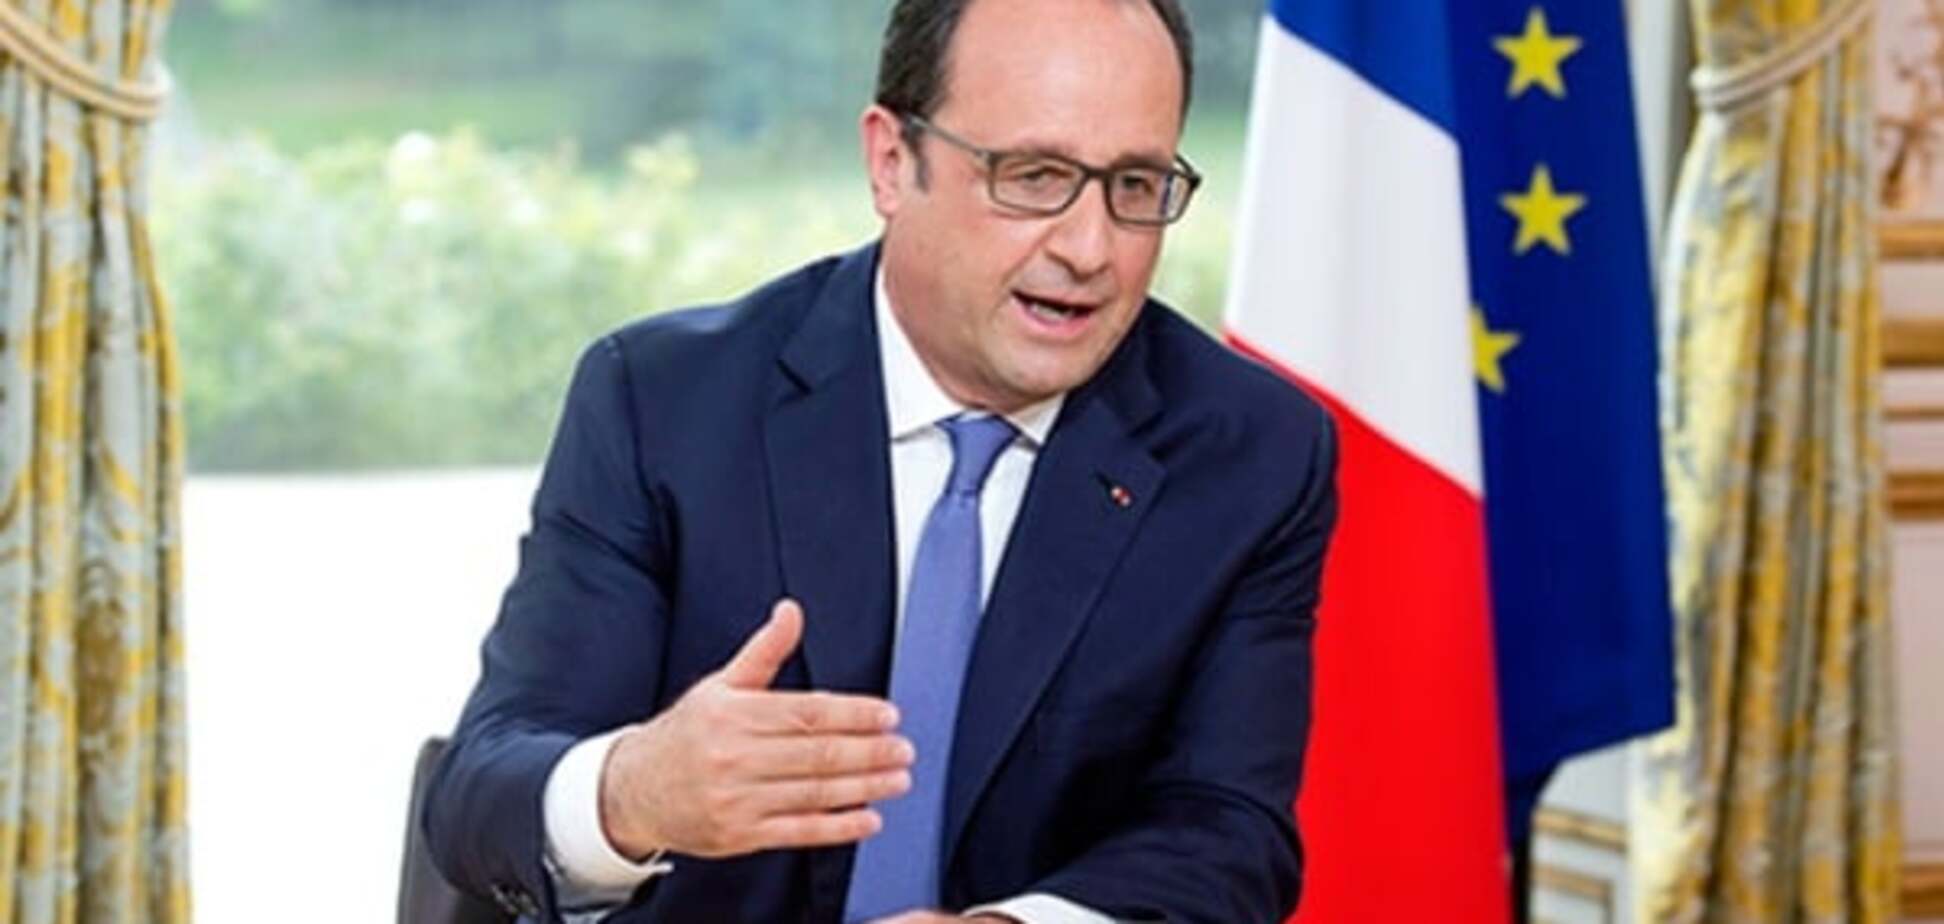 Панамские документы во Франции